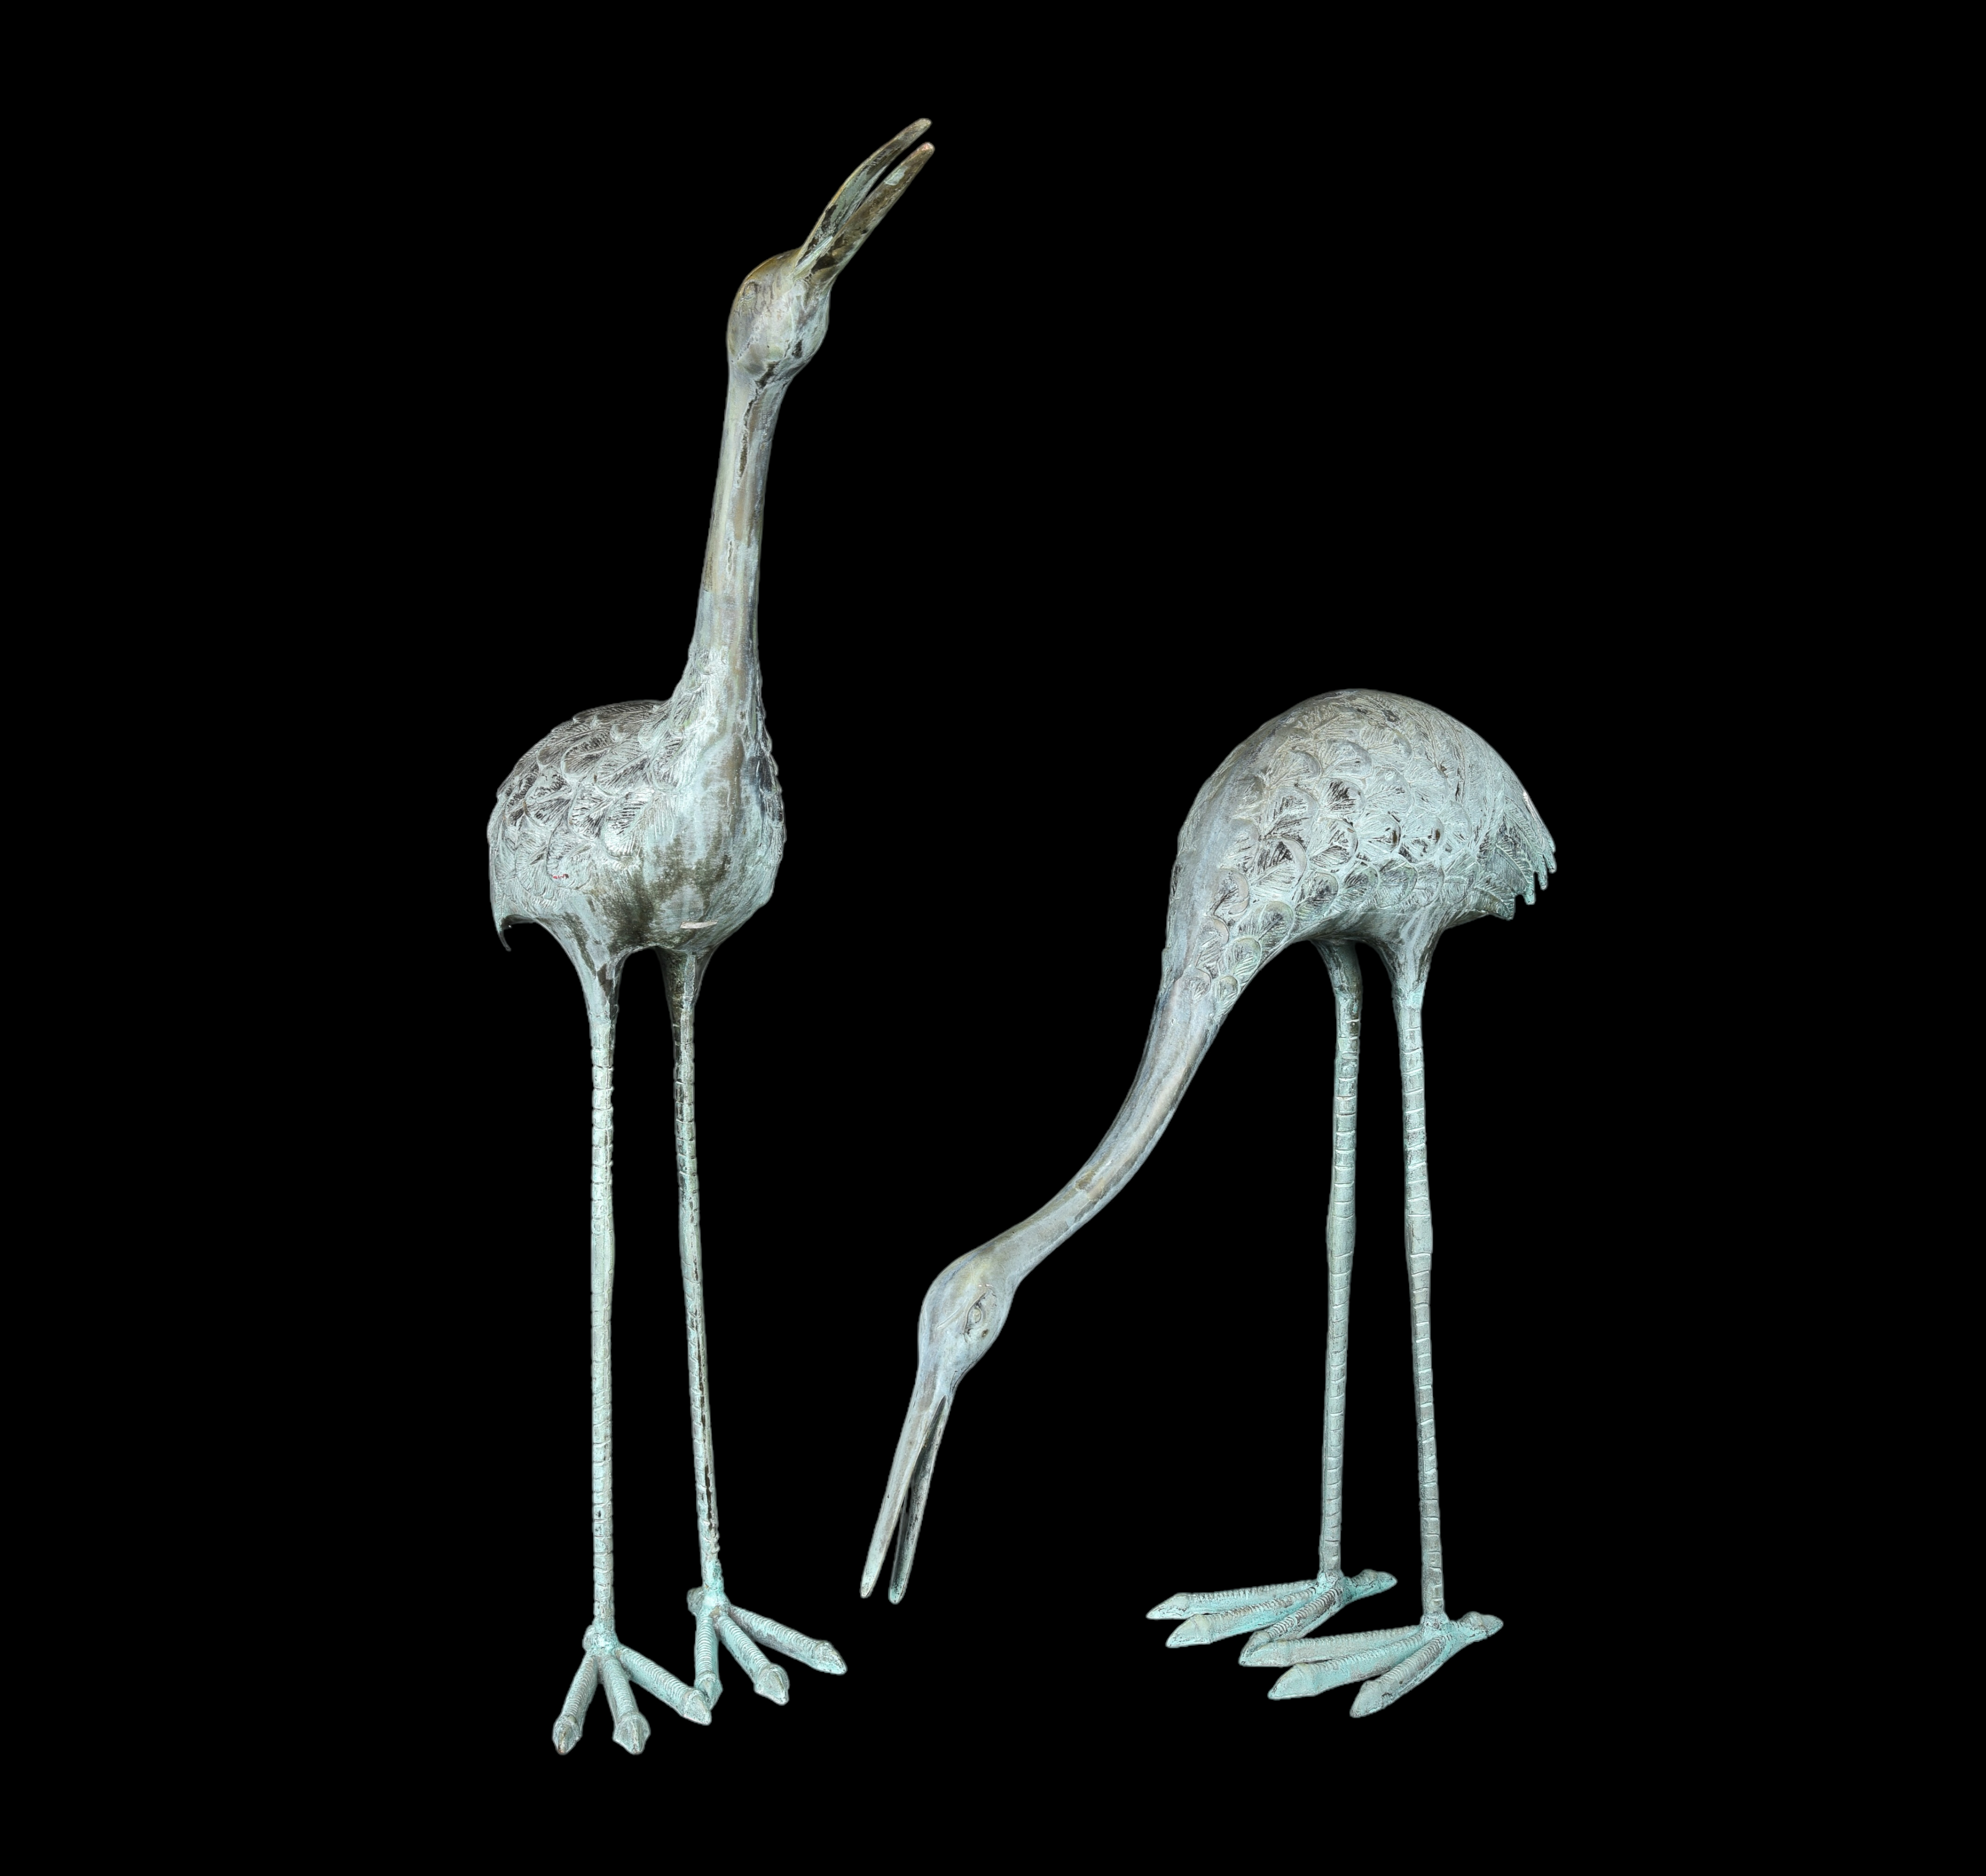 Pair of cast metal garden cranes, verdigris